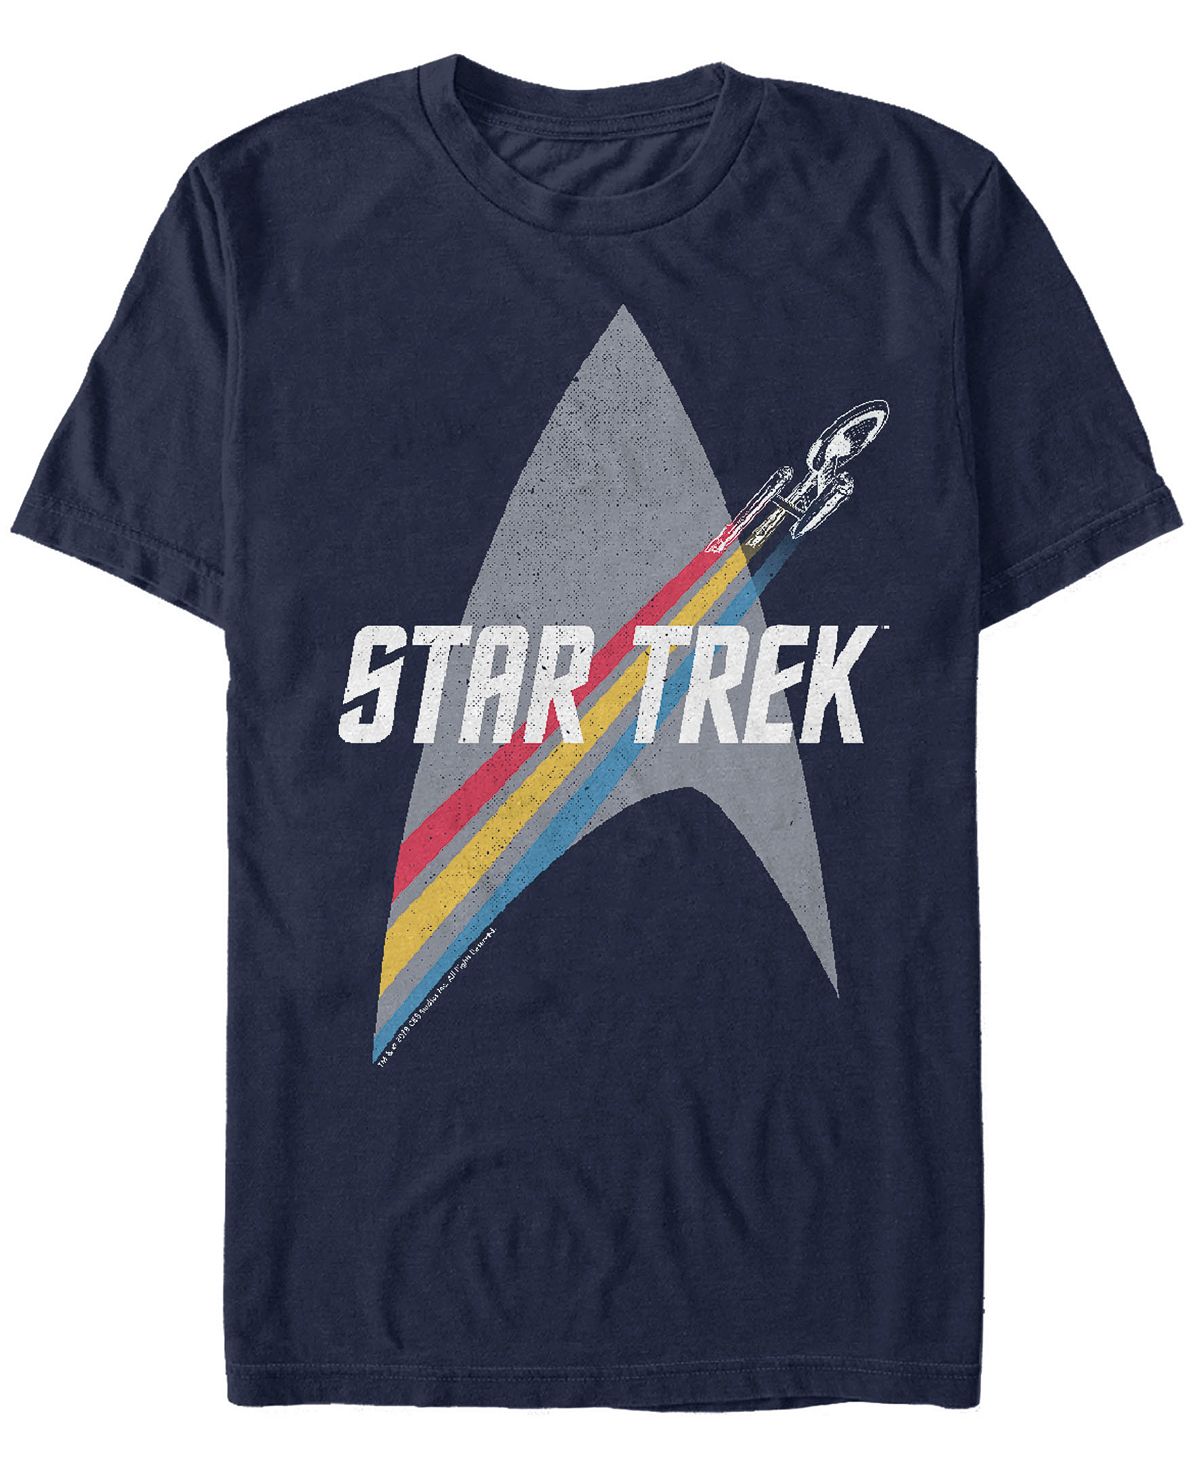 Мужская футболка Star Trek The Original Series Retro Prism Enterprise с короткими рукавами Fifth Sun вуд бенджамин станция на пути туда где лучше